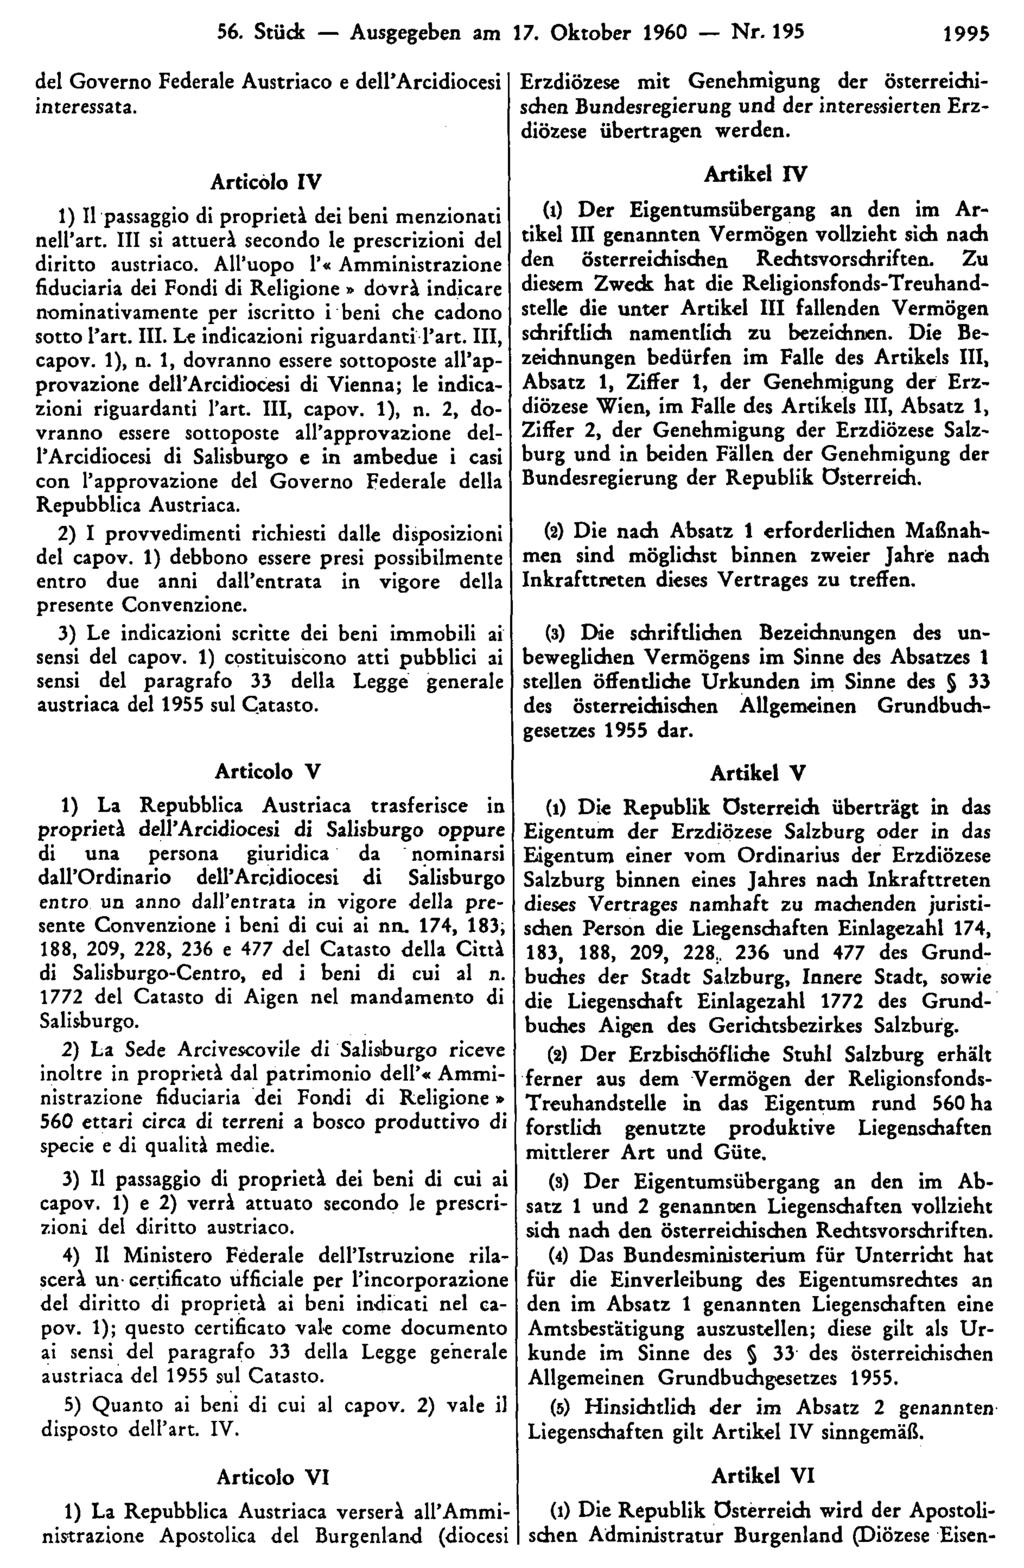 56. Stück Ausgegeben am 17. Oktober 1960 Nr. 195 1995 Erzdiözese mit Genehmigung der österreichischen Bundesregierung und der interessierten Erzdiözese übertragen werden.